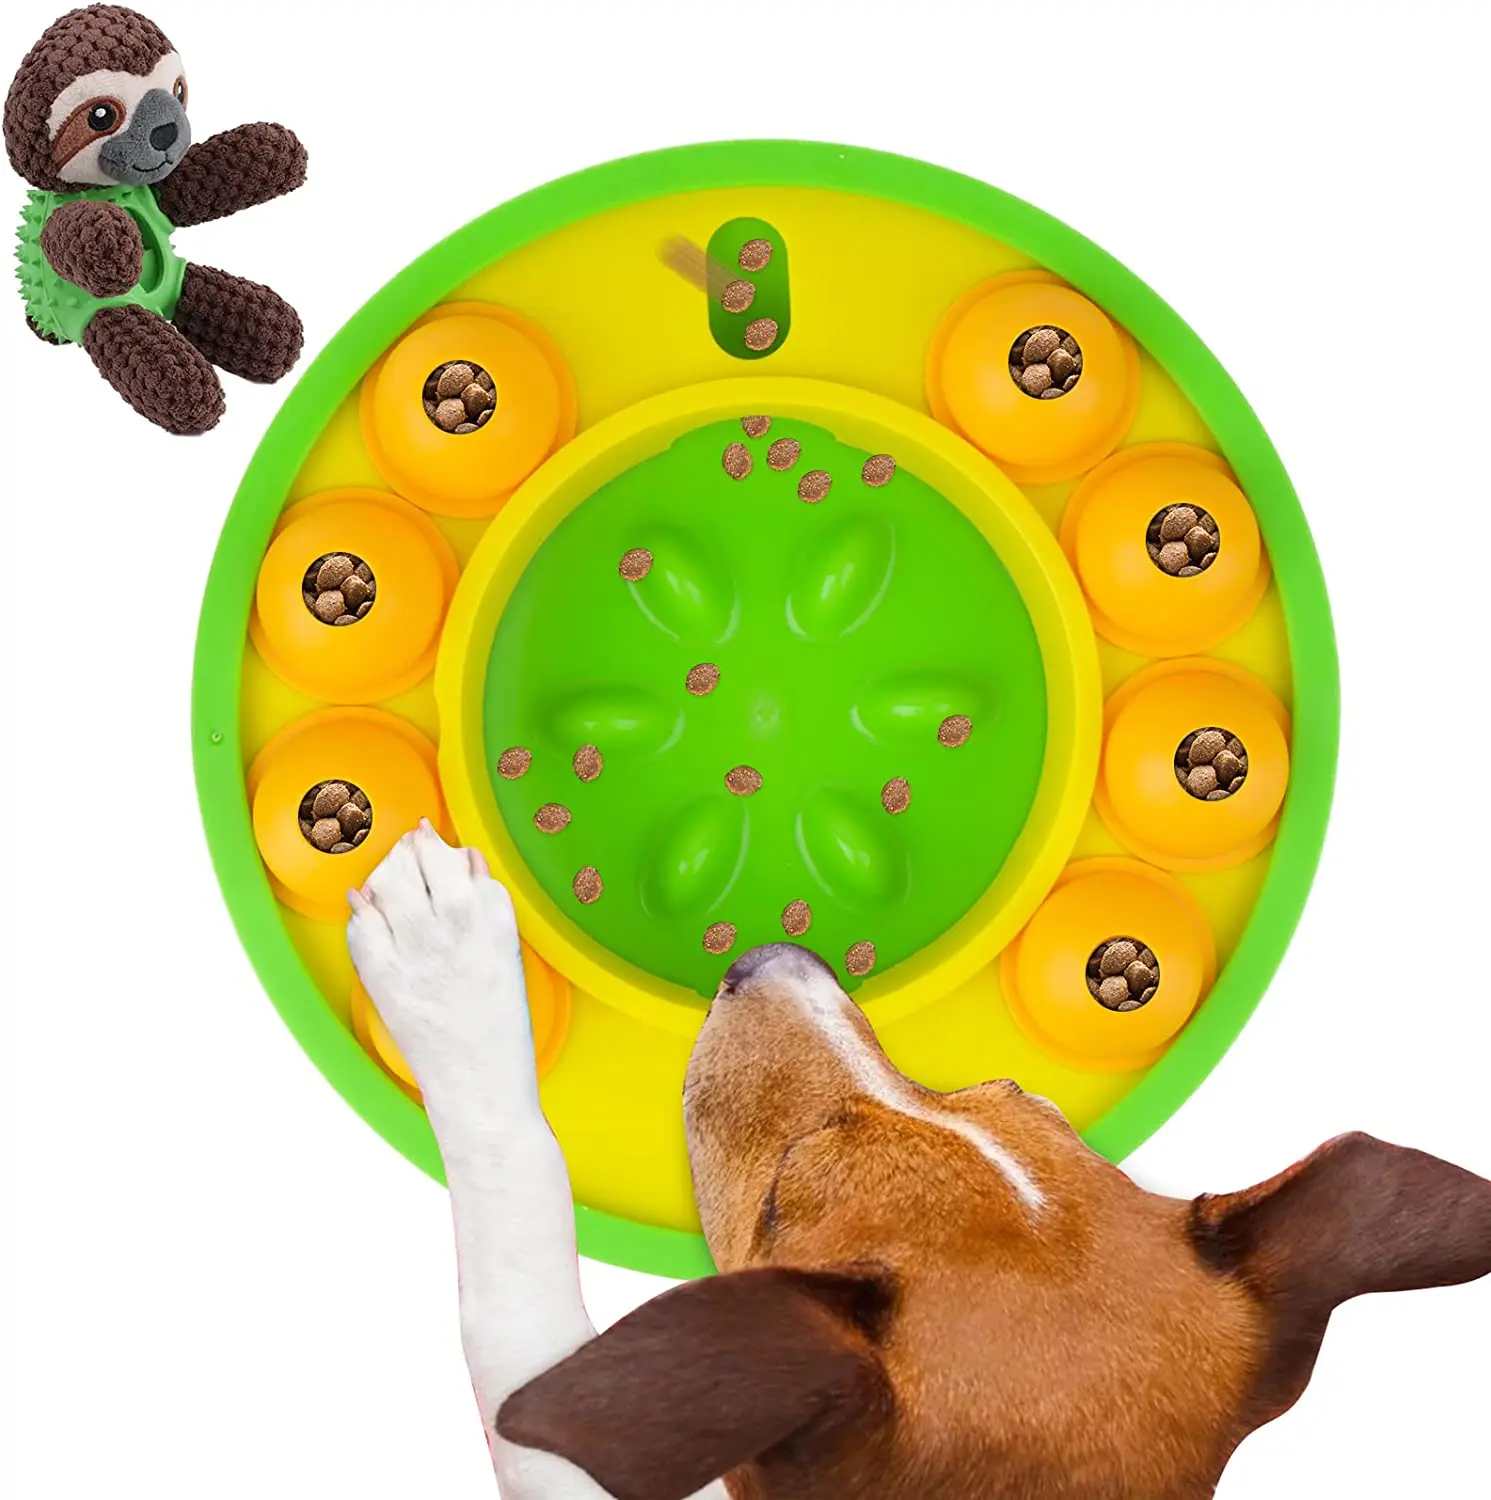 

Jouet Educatif pour Chien Jouet éducatif Slow Food pour Chien Puzzle interactif ChiLot de 2 Dog Jeu Intelligence Chien,Jeux Chi